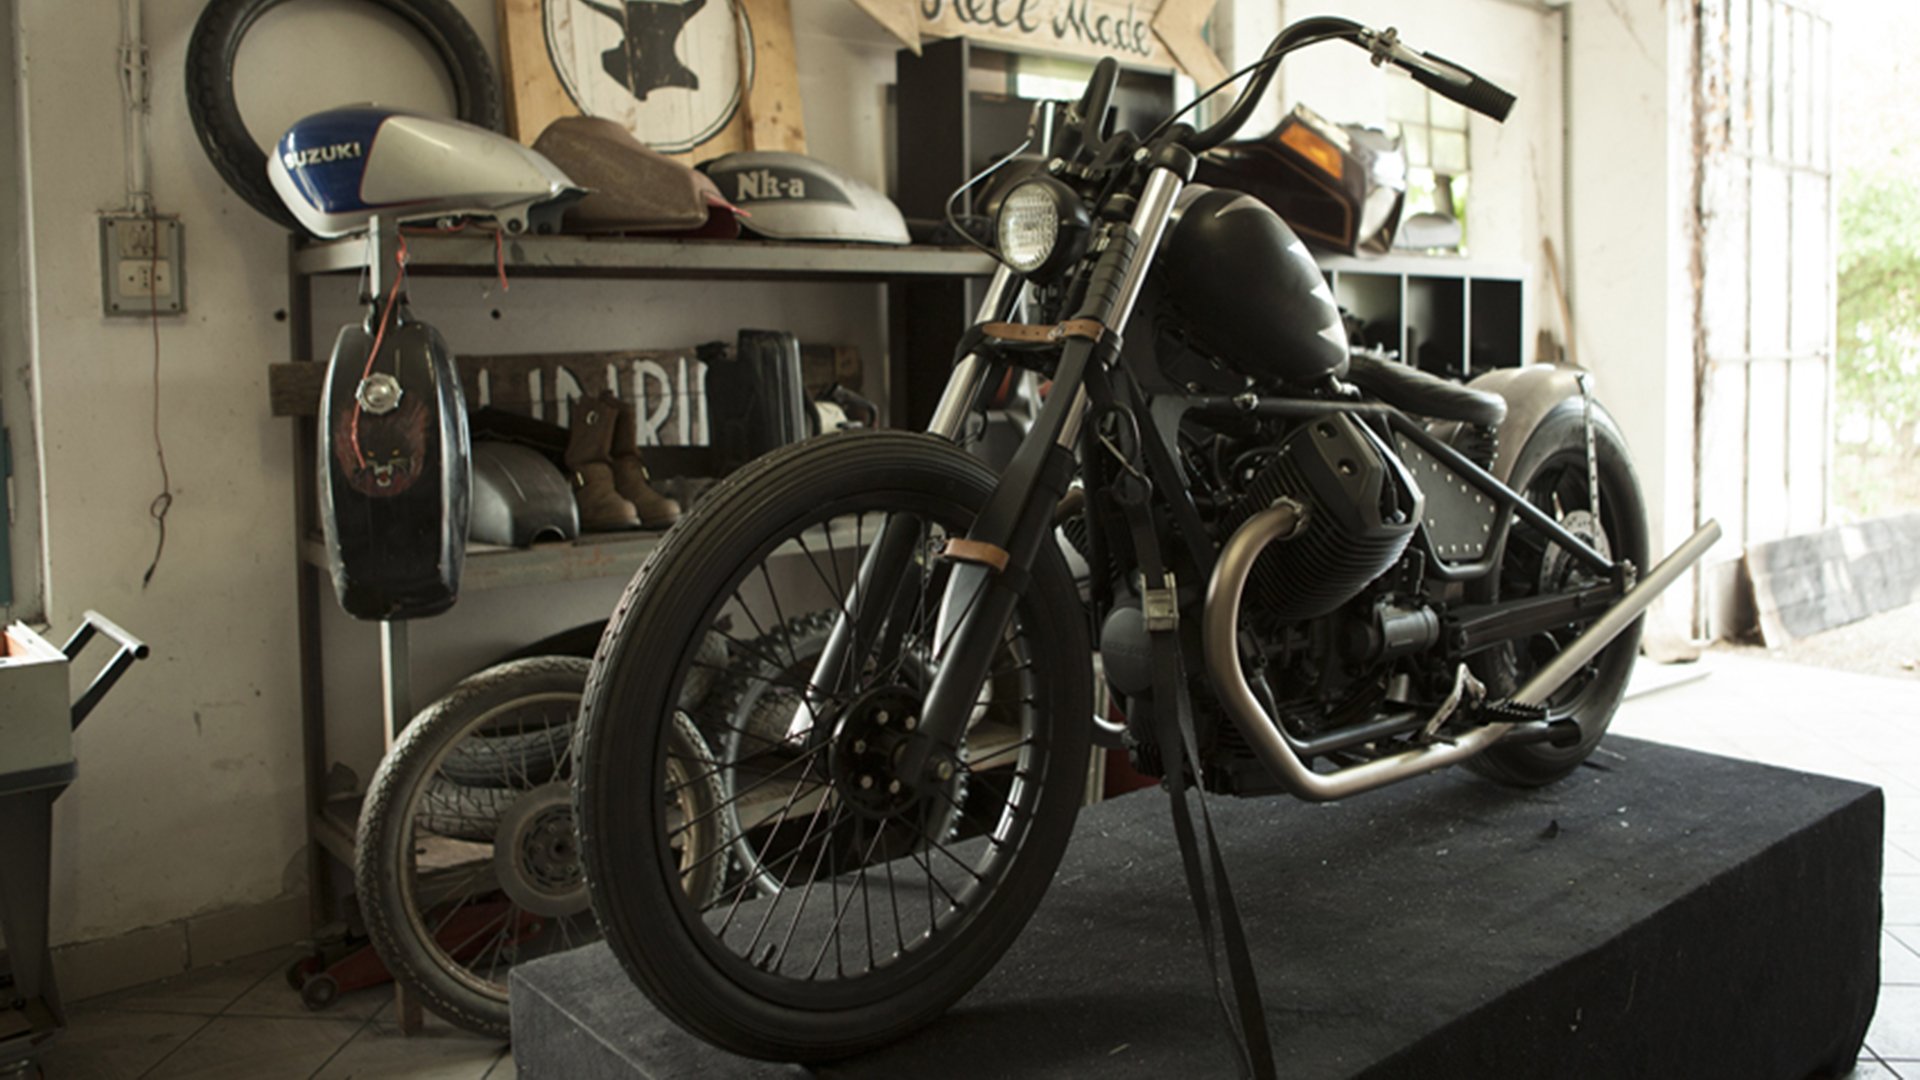 Moto Guzzi V7 "Raise Hell" Bobber (Anvil Motociclette) - CafeRaceros